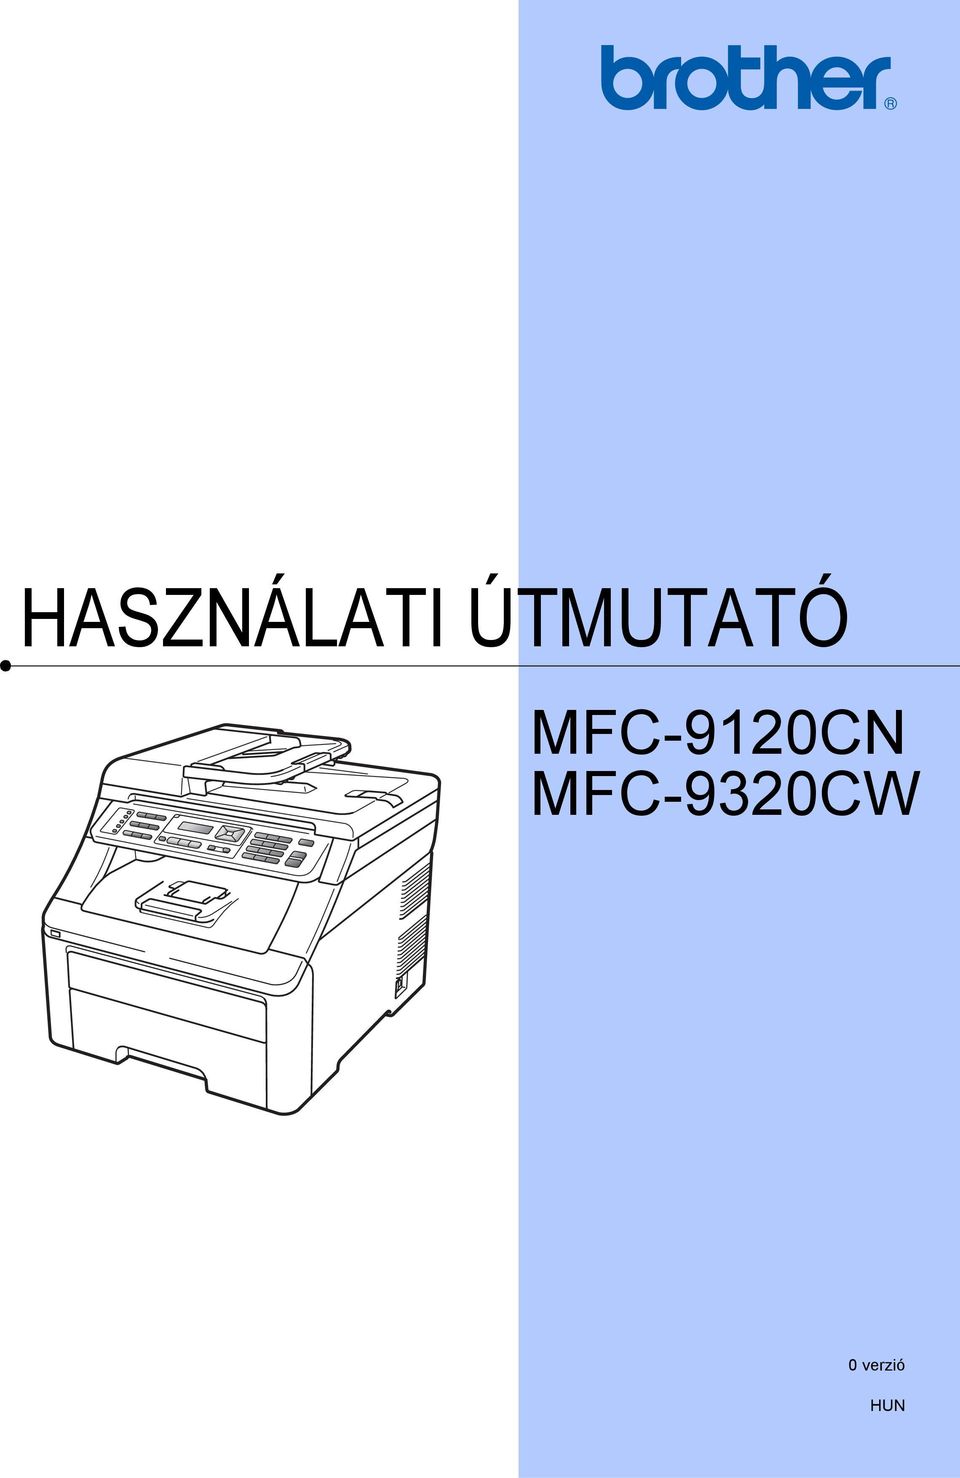 MFC-9120CN